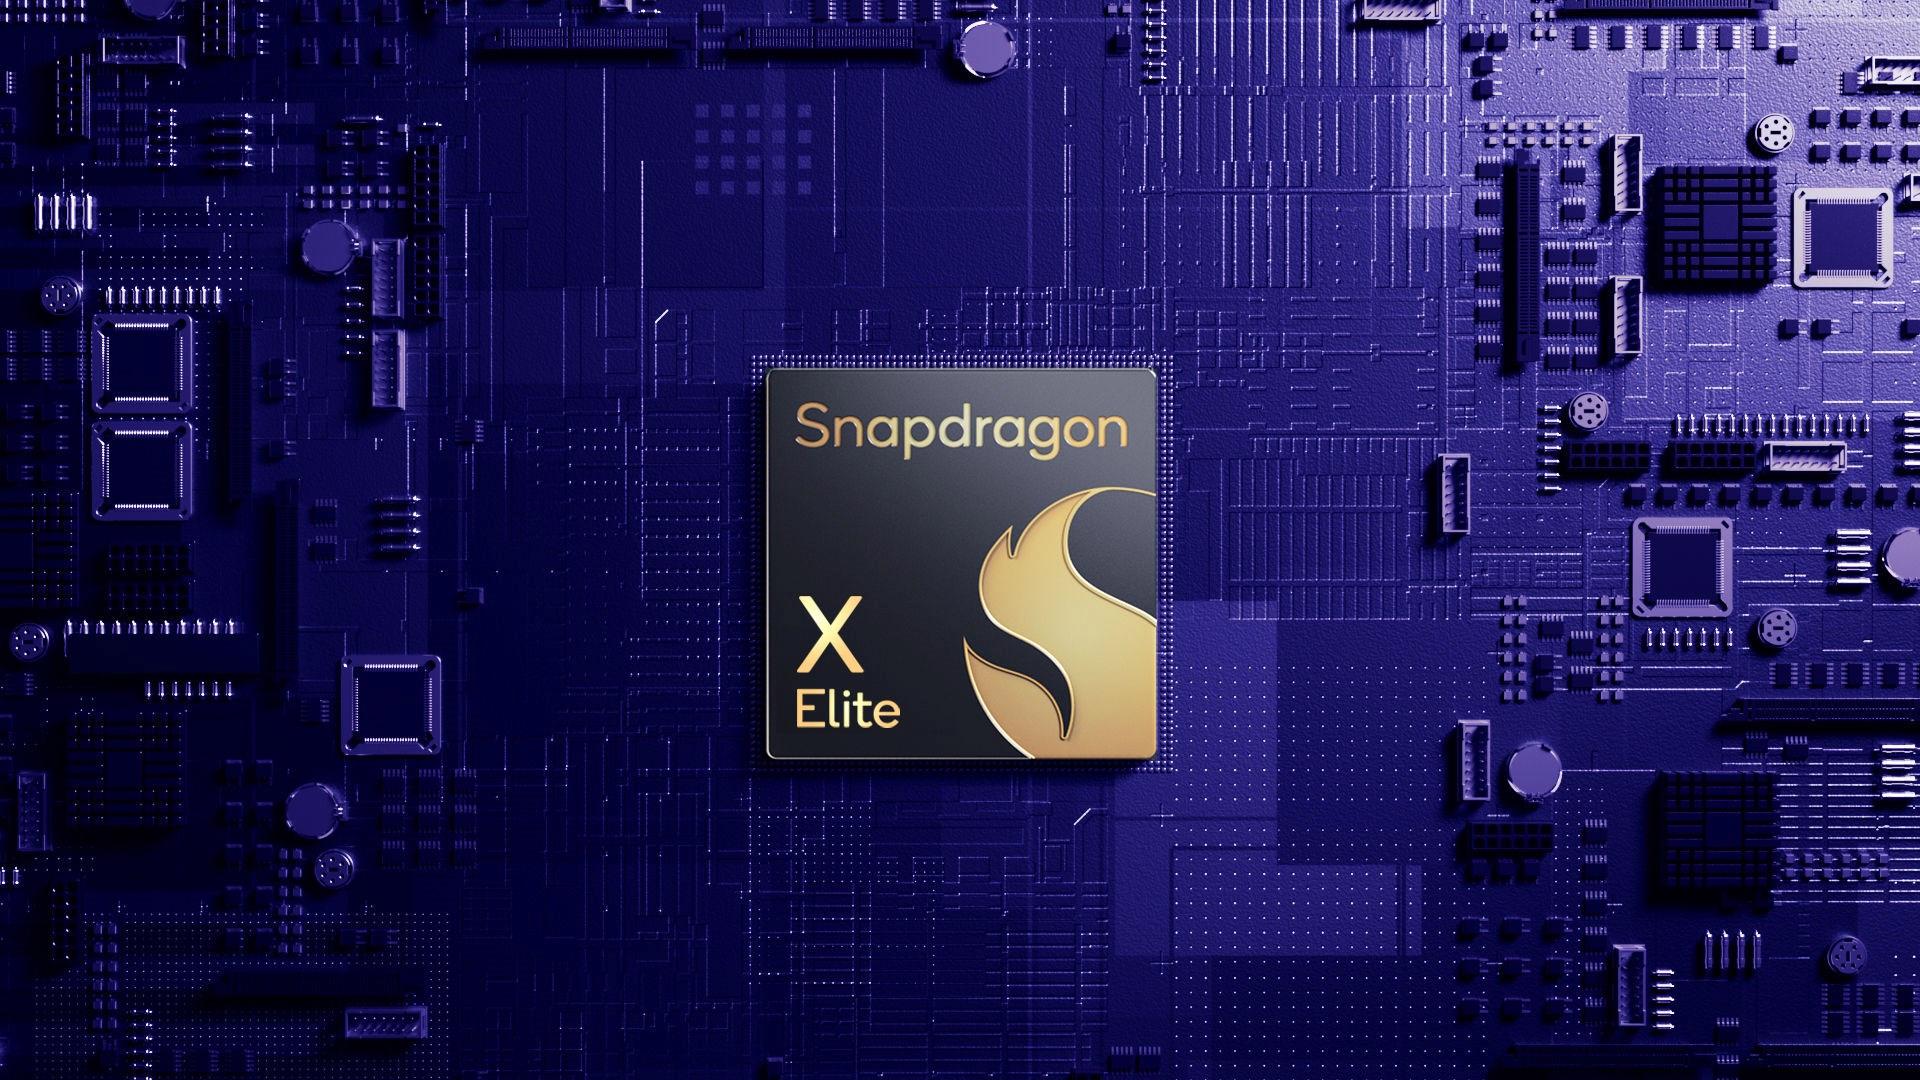 snapdragon-x-elite-baldurs-gate-3u-1080p-30-fpsde-oynatiyor-IgCAY5Qi.jpg